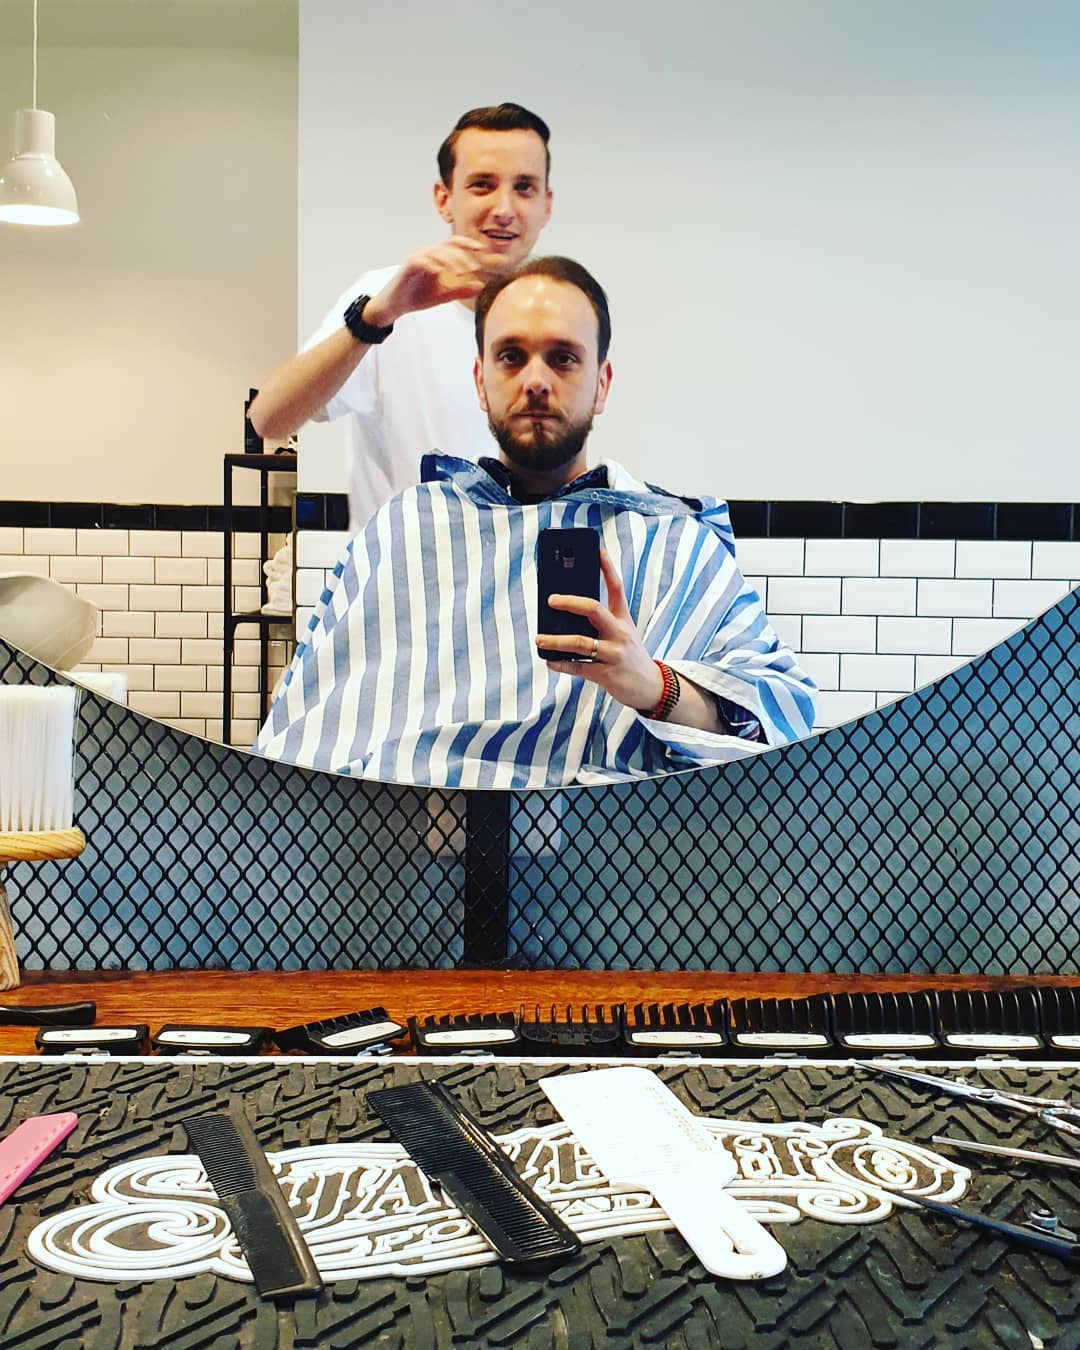 Wiedermal die Haare und den Bart in Form bringen lassen von meinem lieblings #barbier Martin vom @brothersbarbershopvienna #barbier #ichhabdiehaareschön #bart #bartstyle